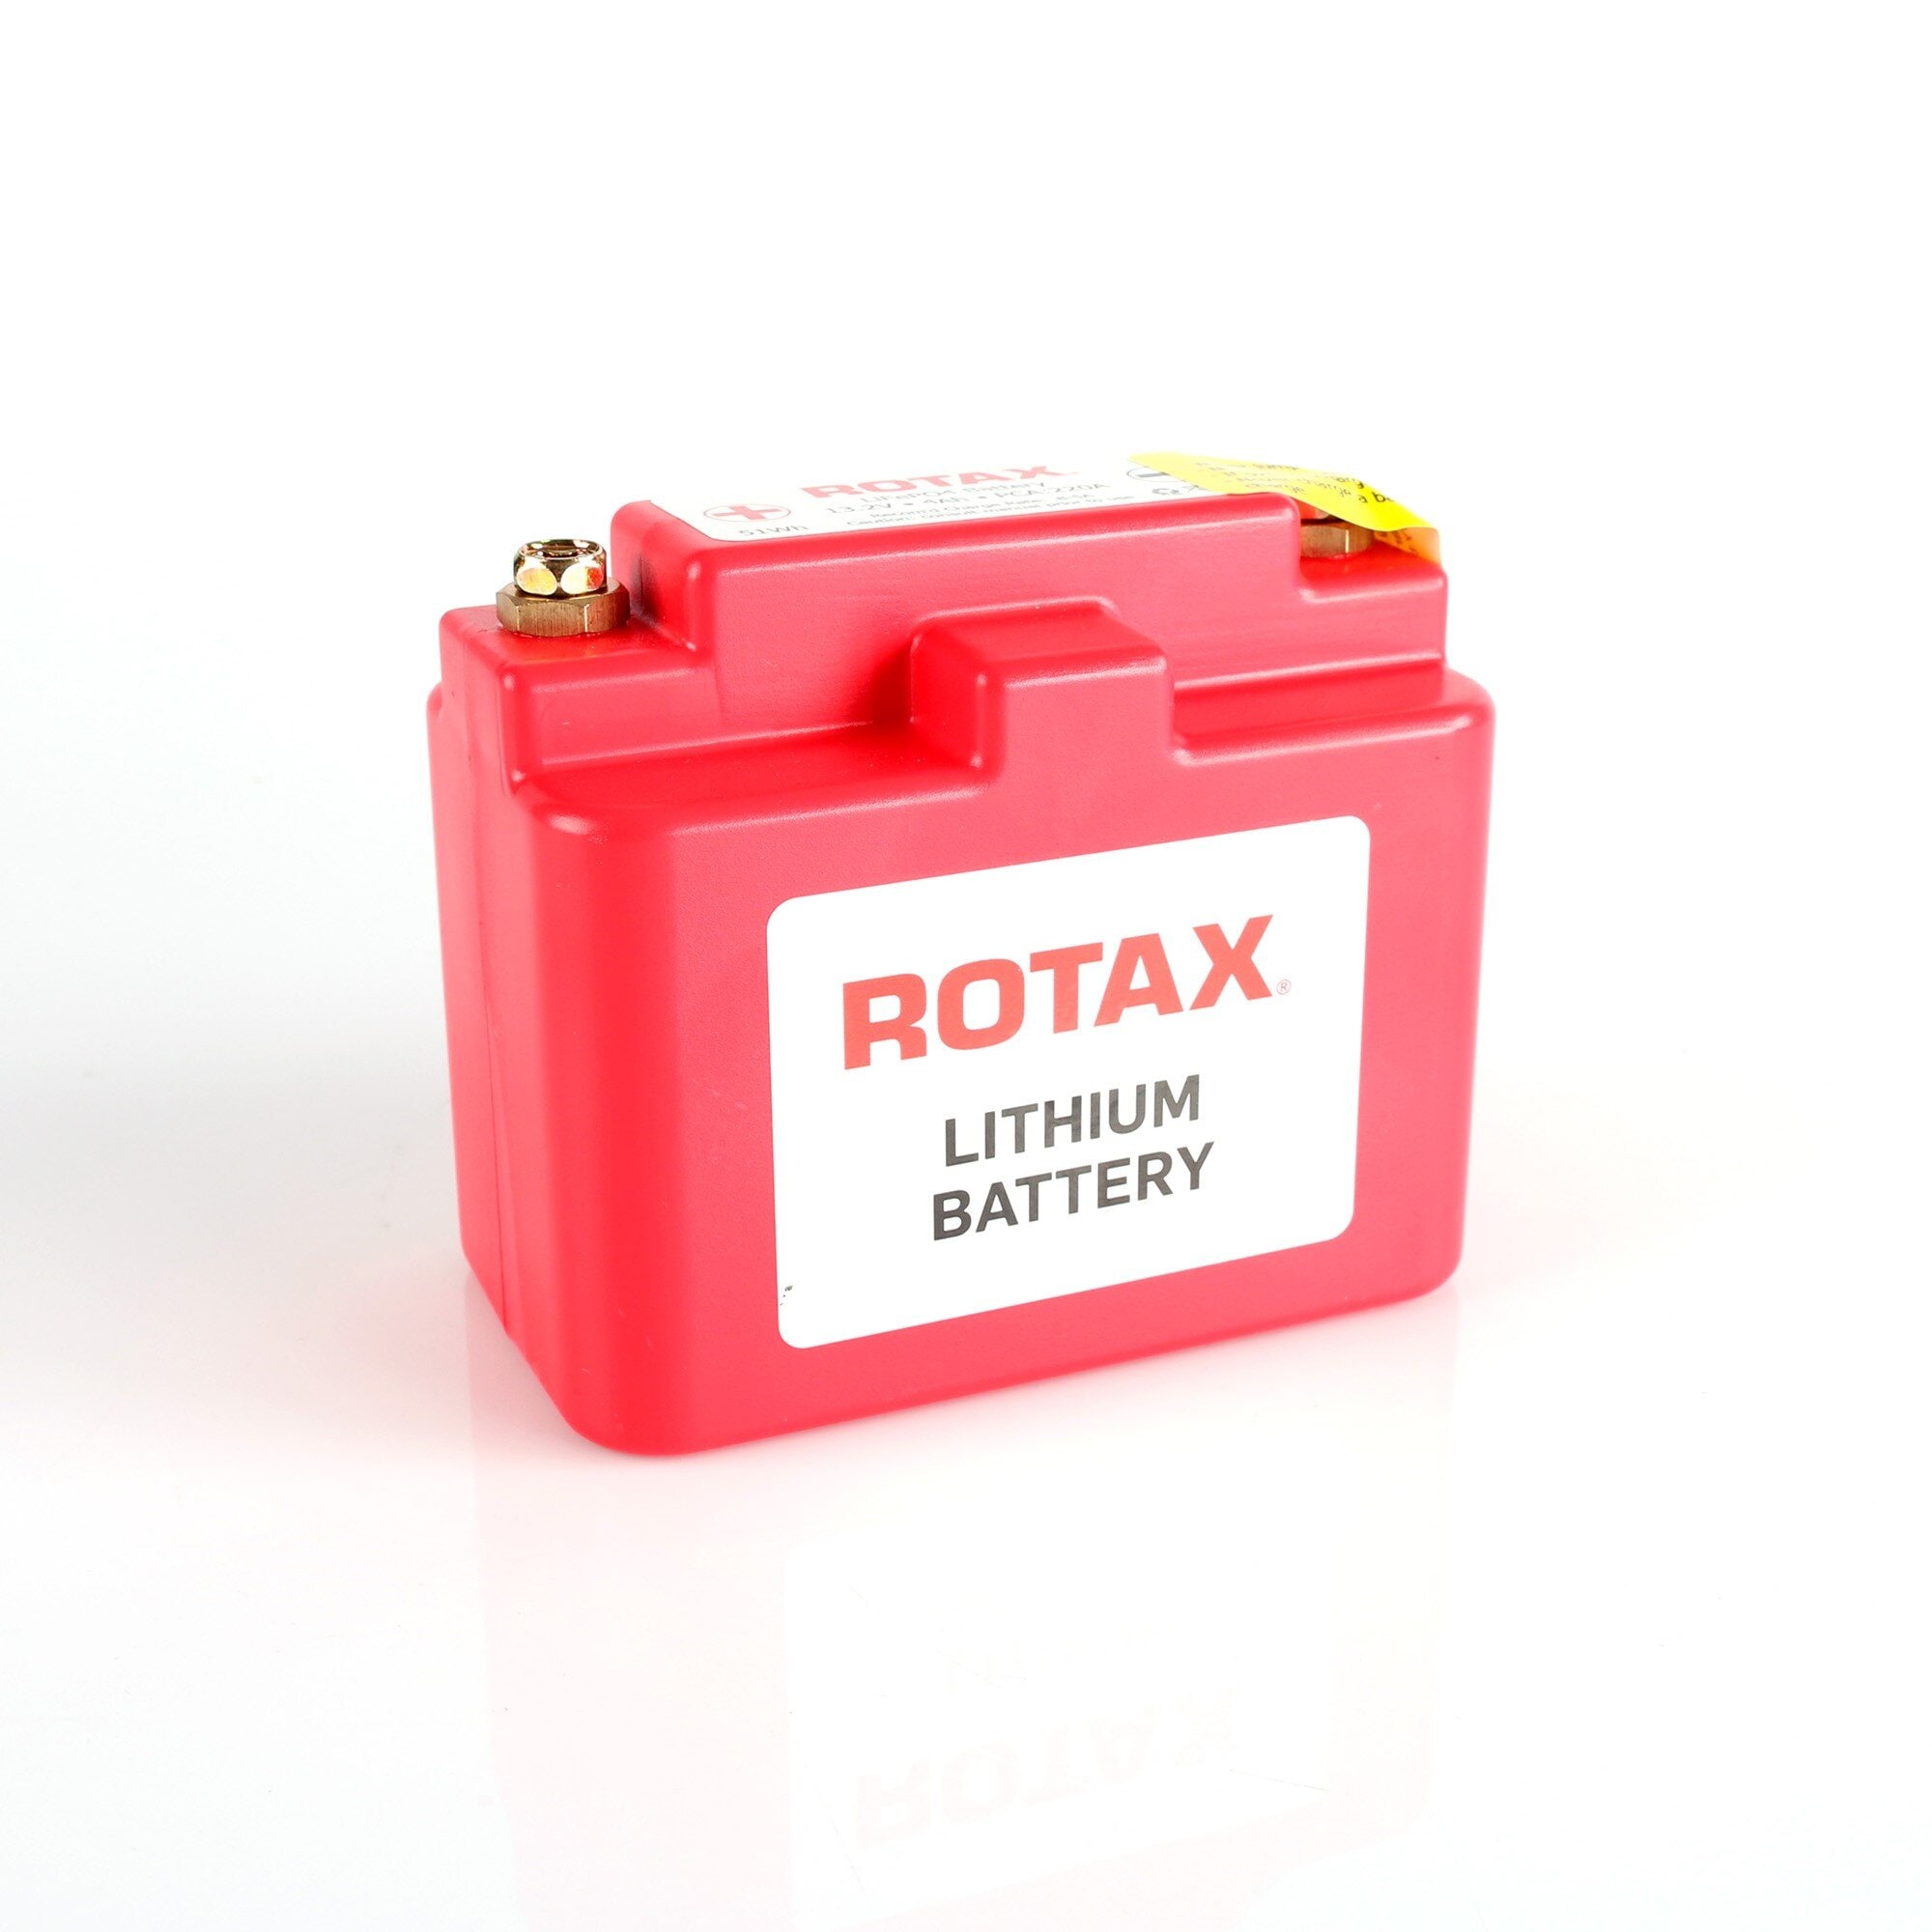 Letvægts litiumbatteri (LiFePo4) til Rotax Max